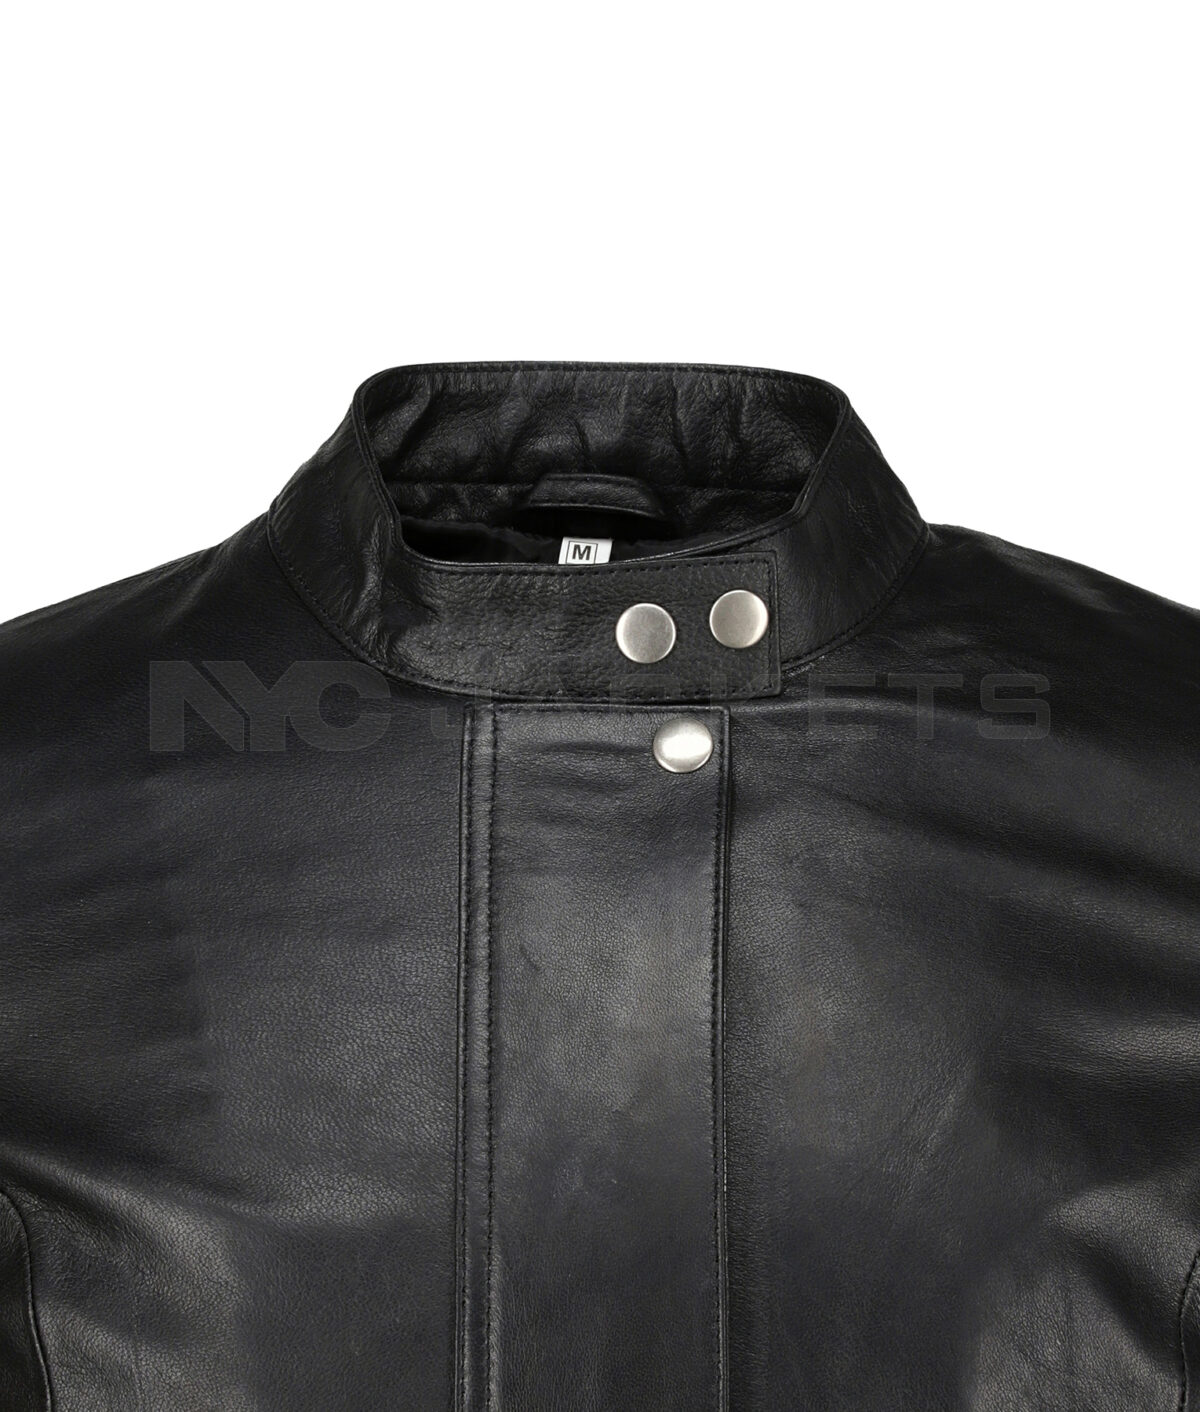 Women Black Biker Leather Jacket